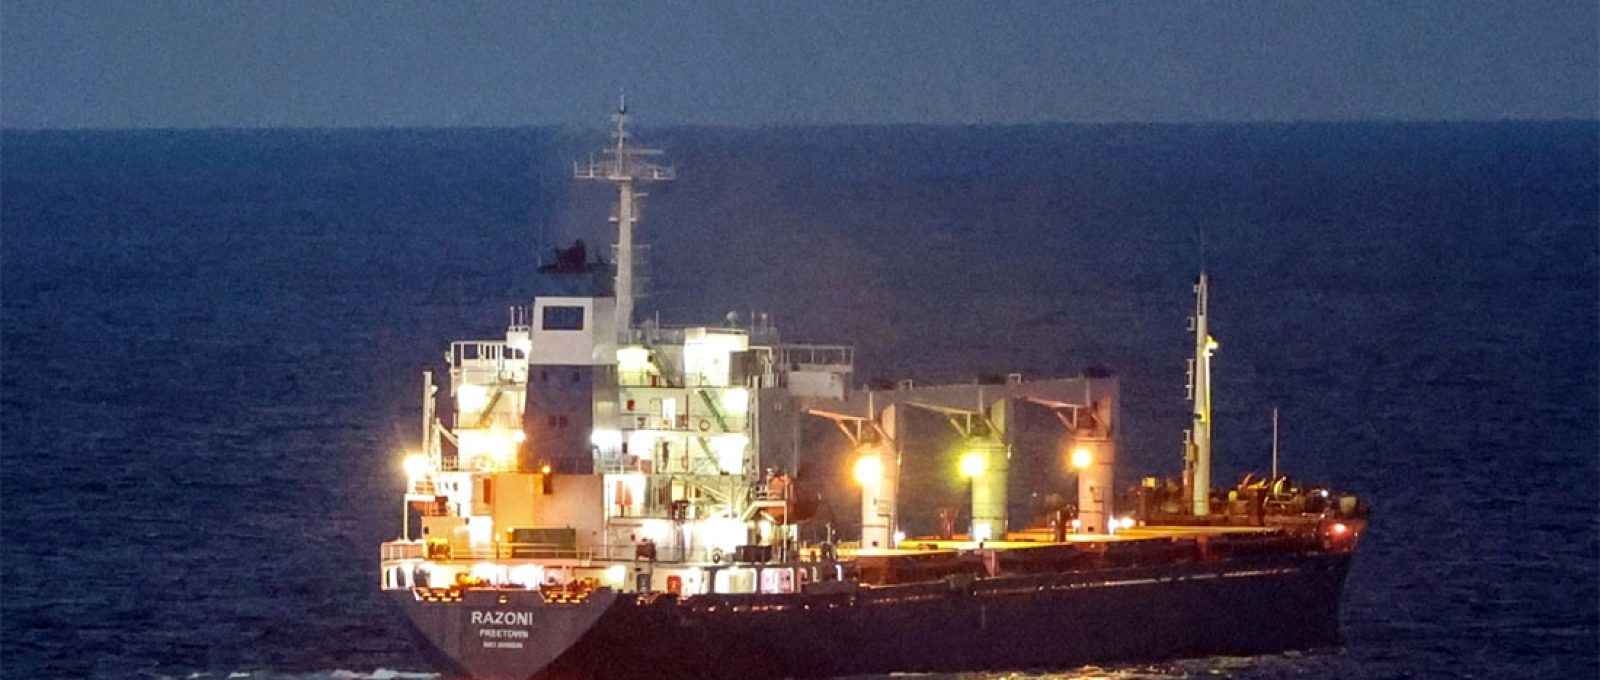 O navio cargueiro Razoni, com bandeira de Serra Leoa, transportando grãos ucranianos, foi visto no Mar Negro ao largo de Kilyos, perto de Istambul, Turquia, em 2 de agosto de 2022 (Reuters).